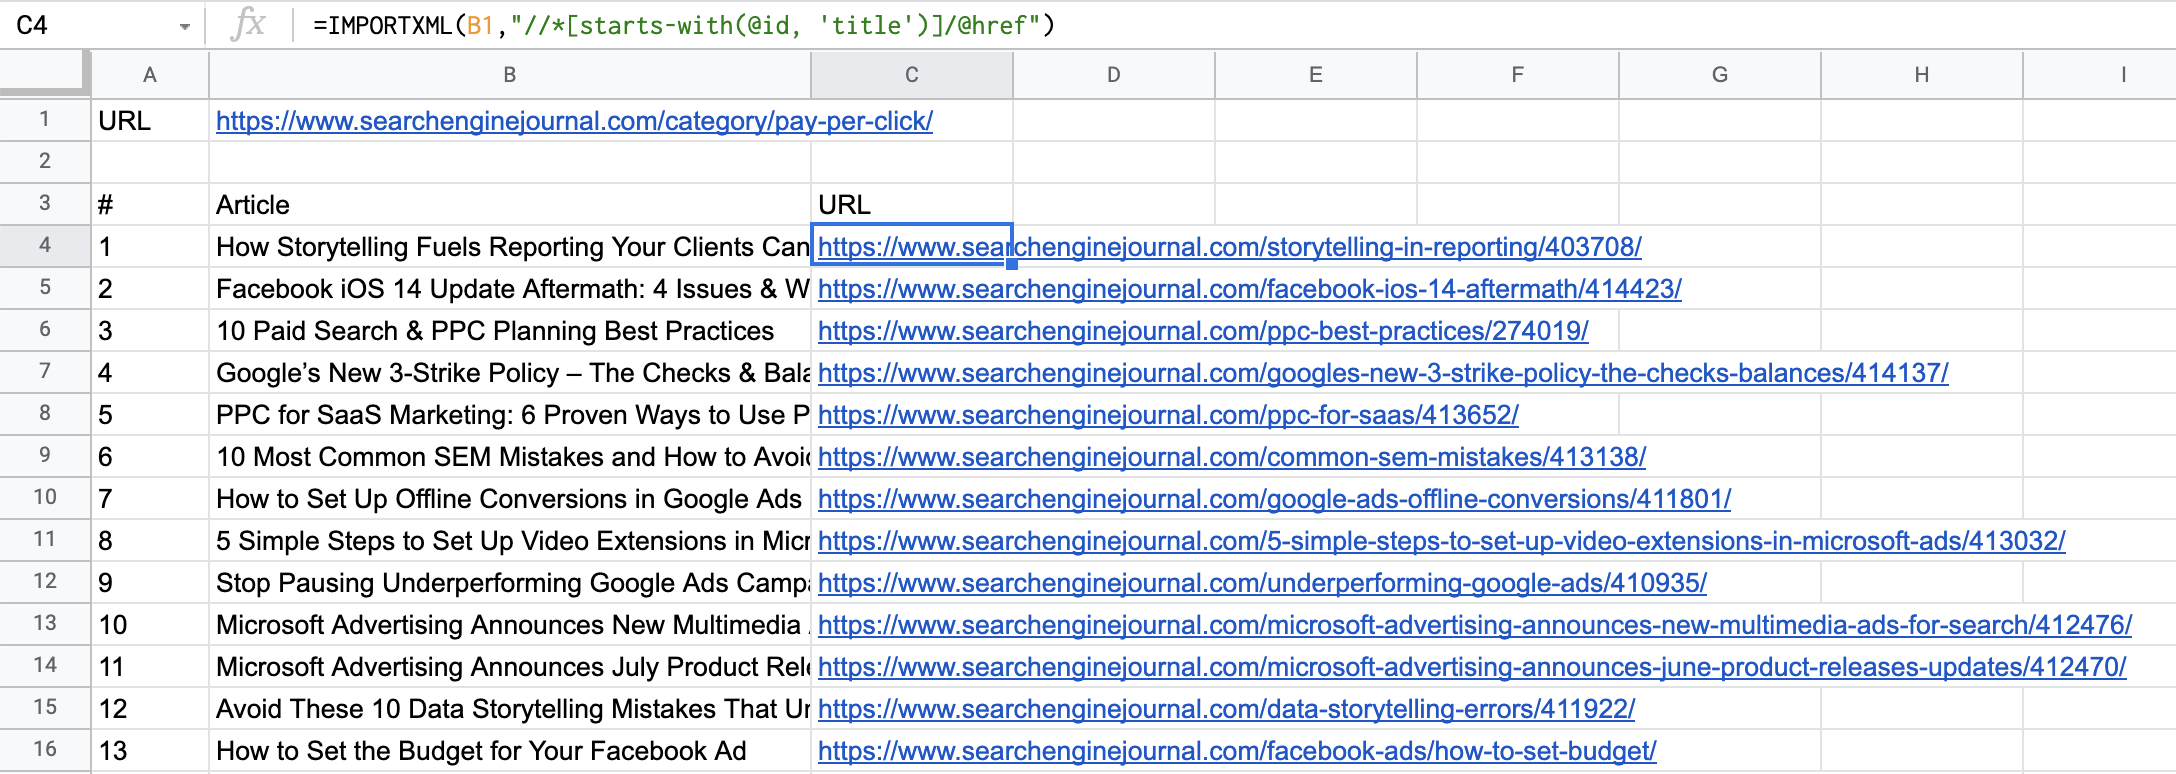 Artículos y URL importados a Google Sheets.